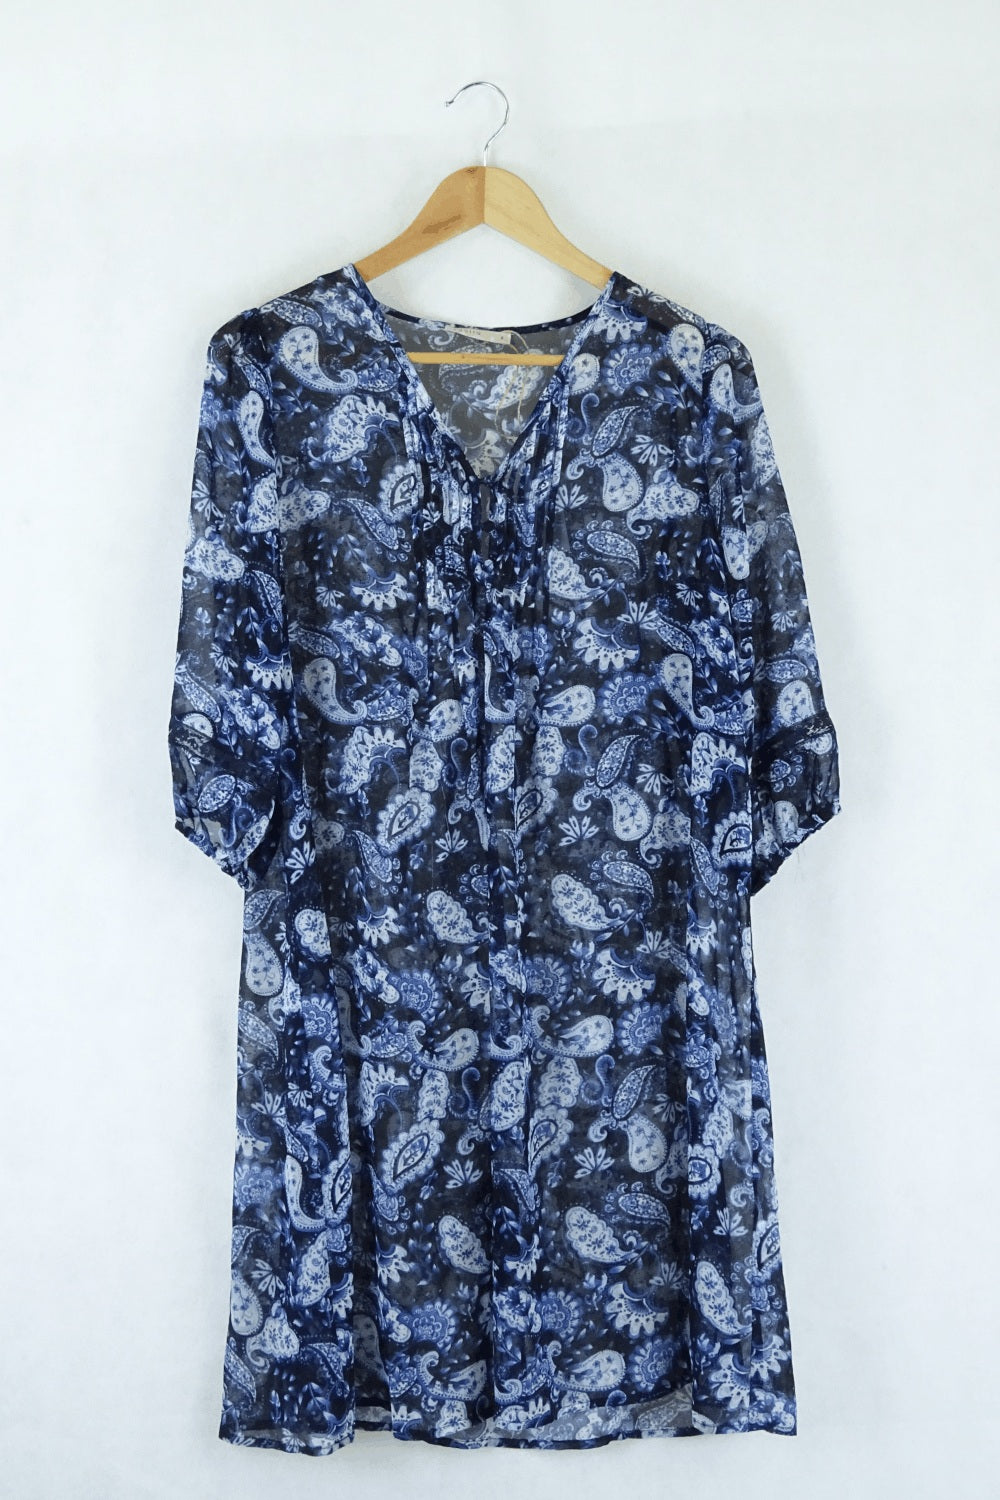 Regatta Floral Blue Dress Sheer 8